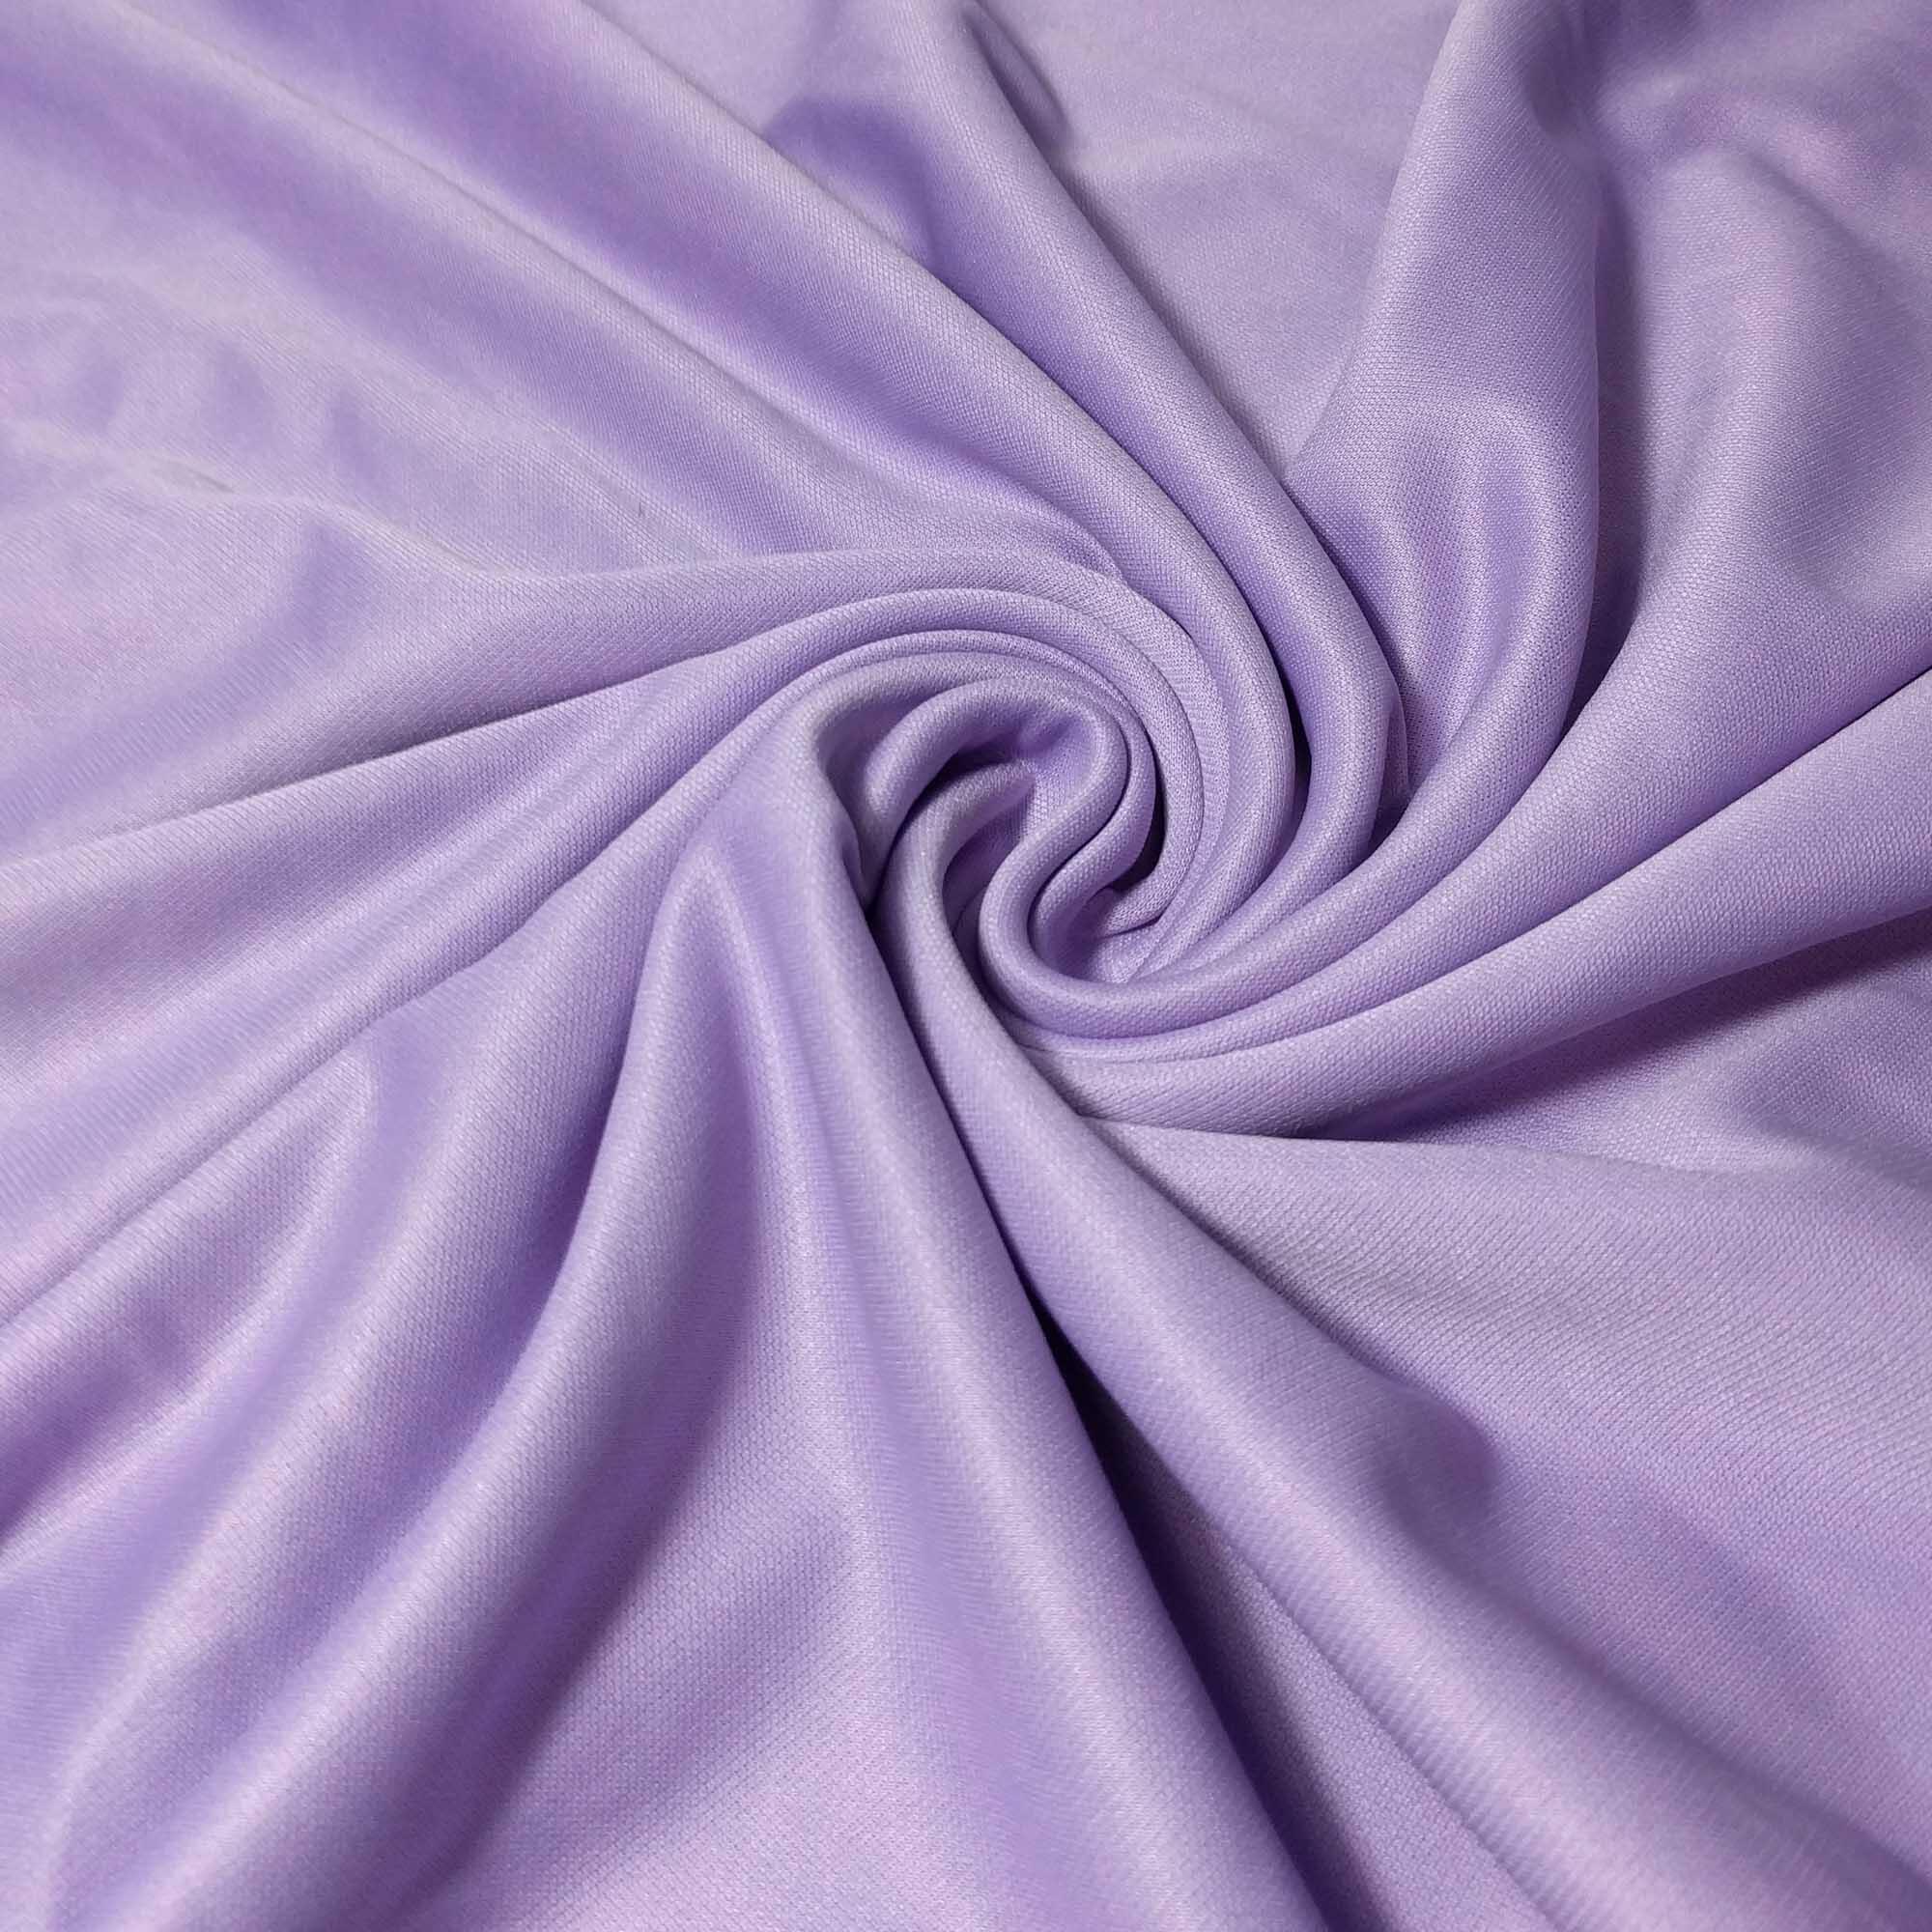 Firetoys Aerial Silk (Aerial Fabric / Tissus) - Lavender 5/5